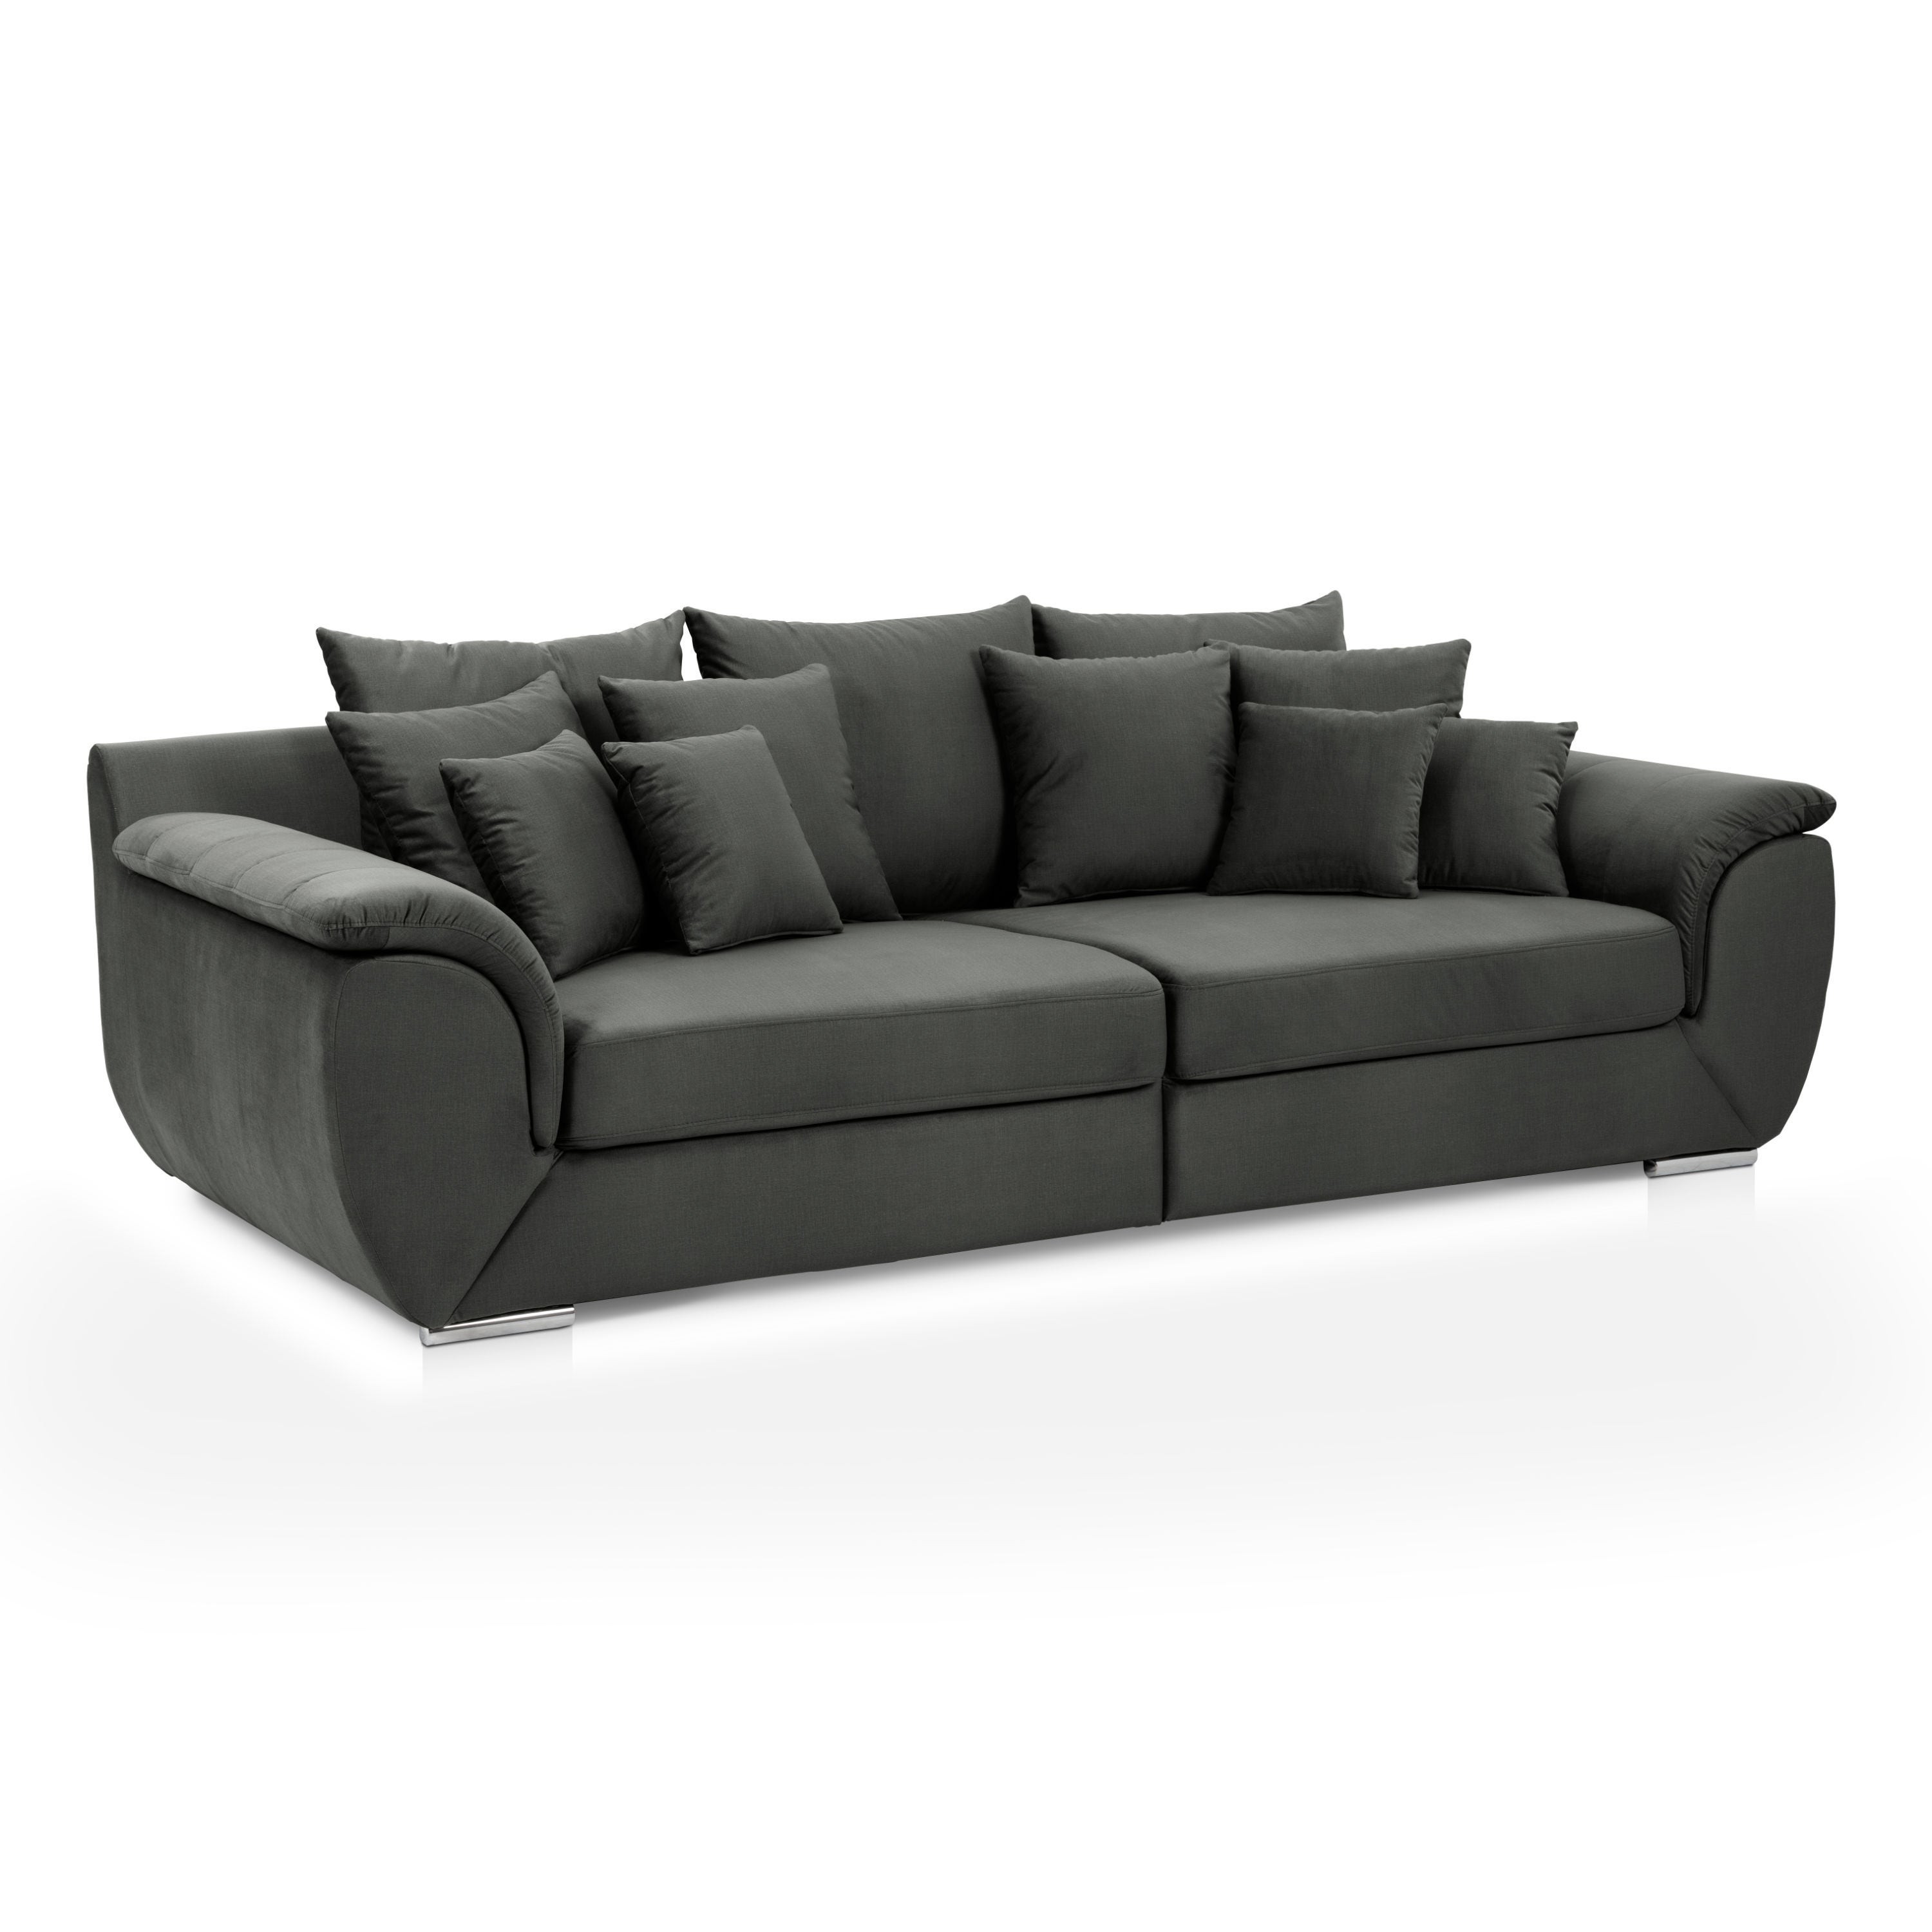 Canapea fixa 3 locuri MM608, gri inchis, 270 x 130 x 93 cm, 2C